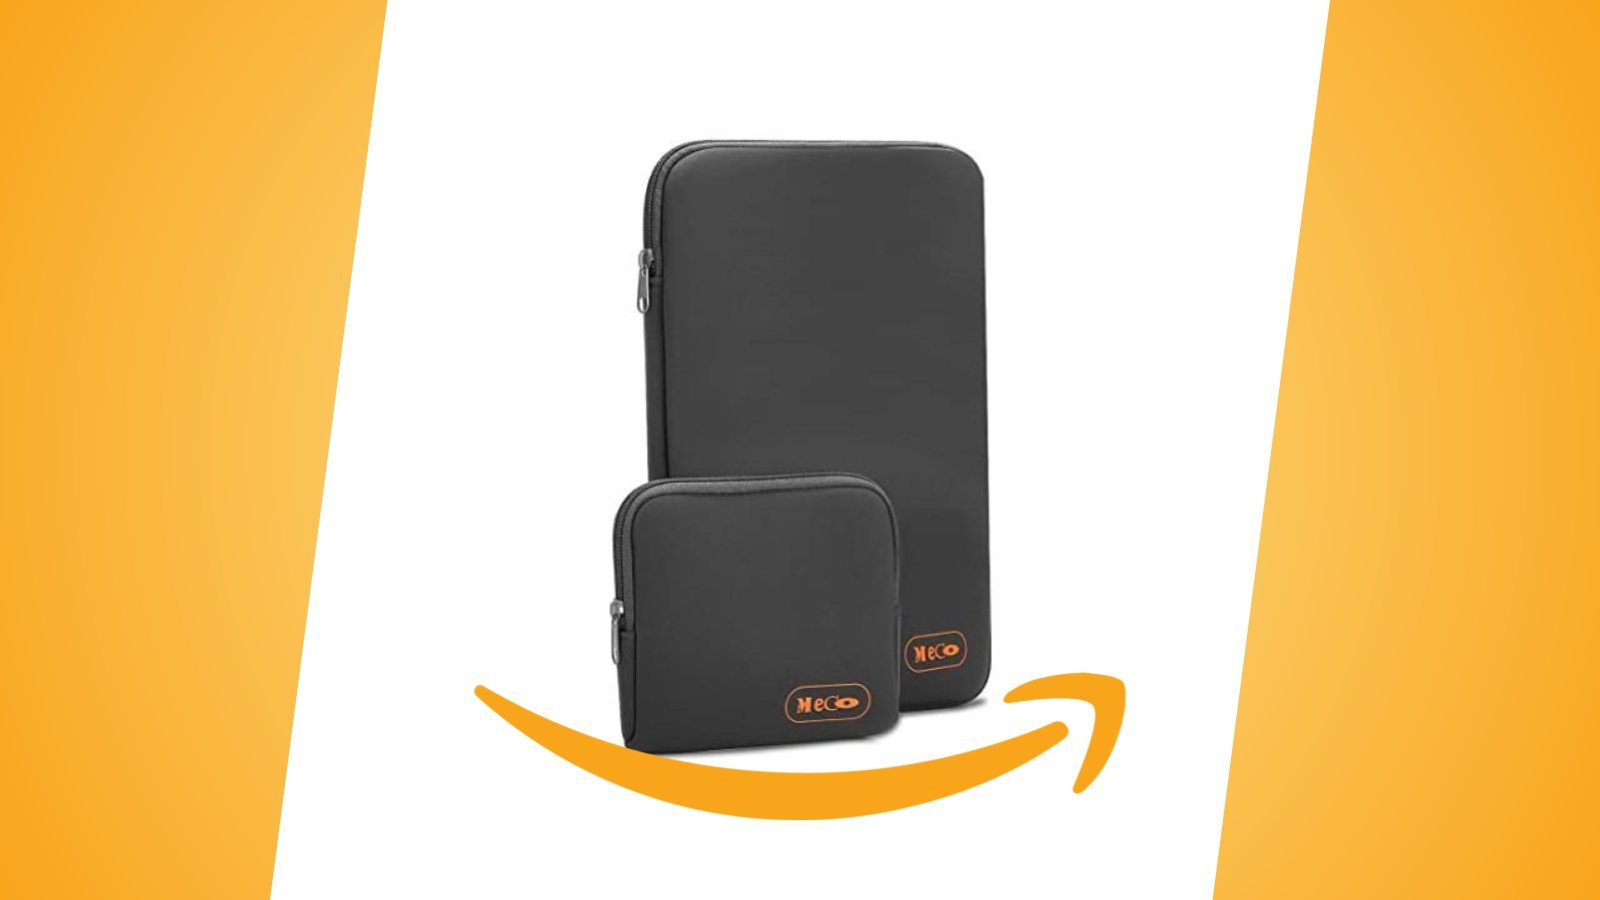 Offerte Amazon: custodia impermeabile antiurto per laptop da 13 pollici in sconto con questo coupon